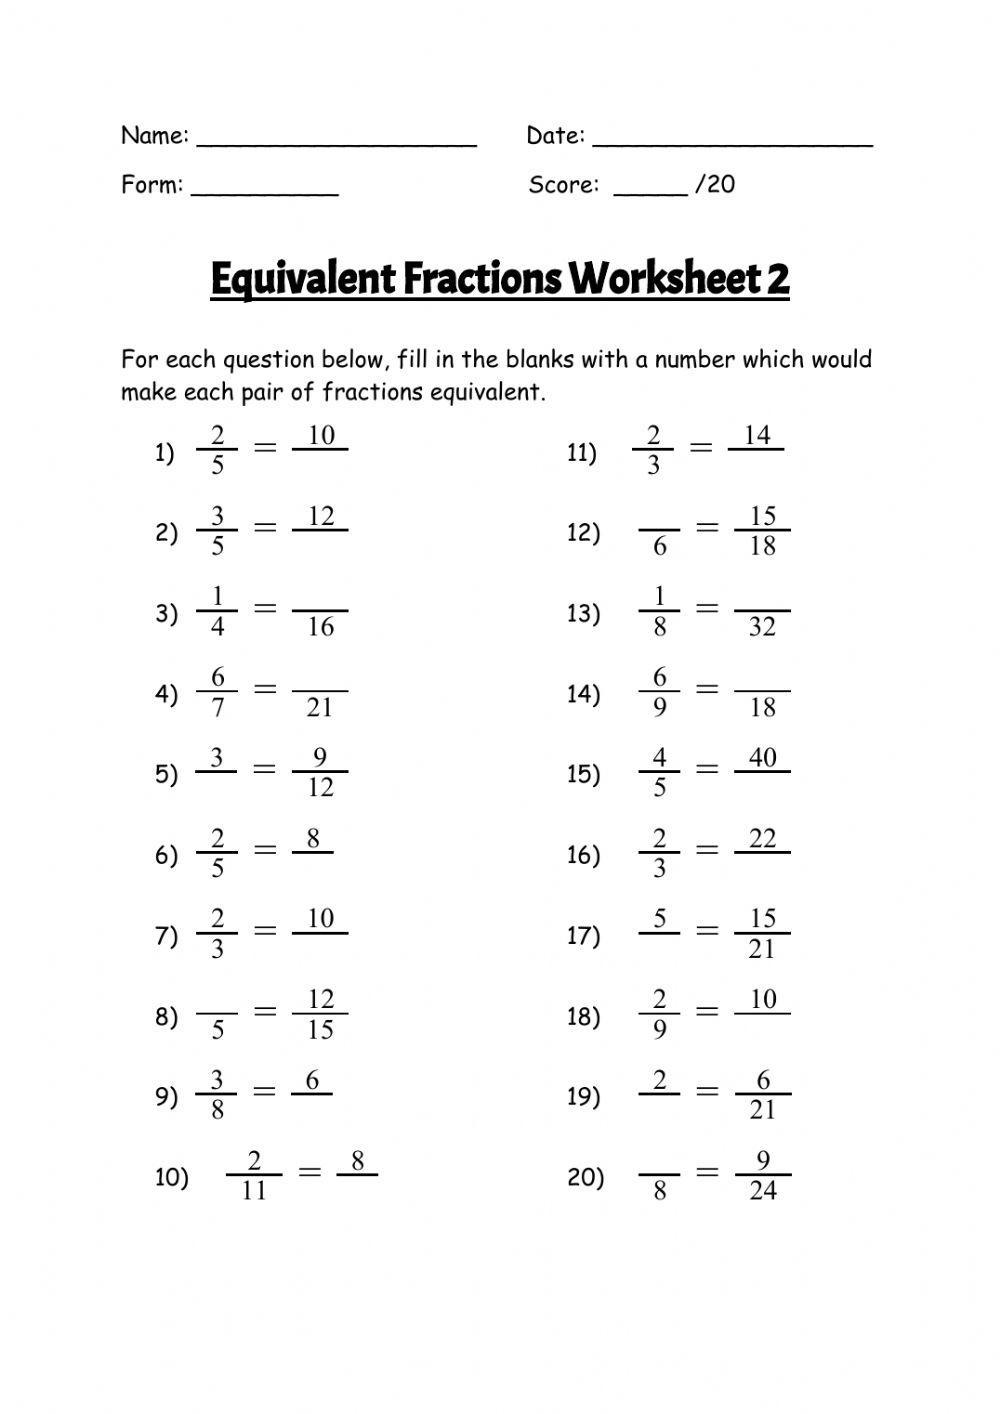 Equivalent Fractions Worksheet 2